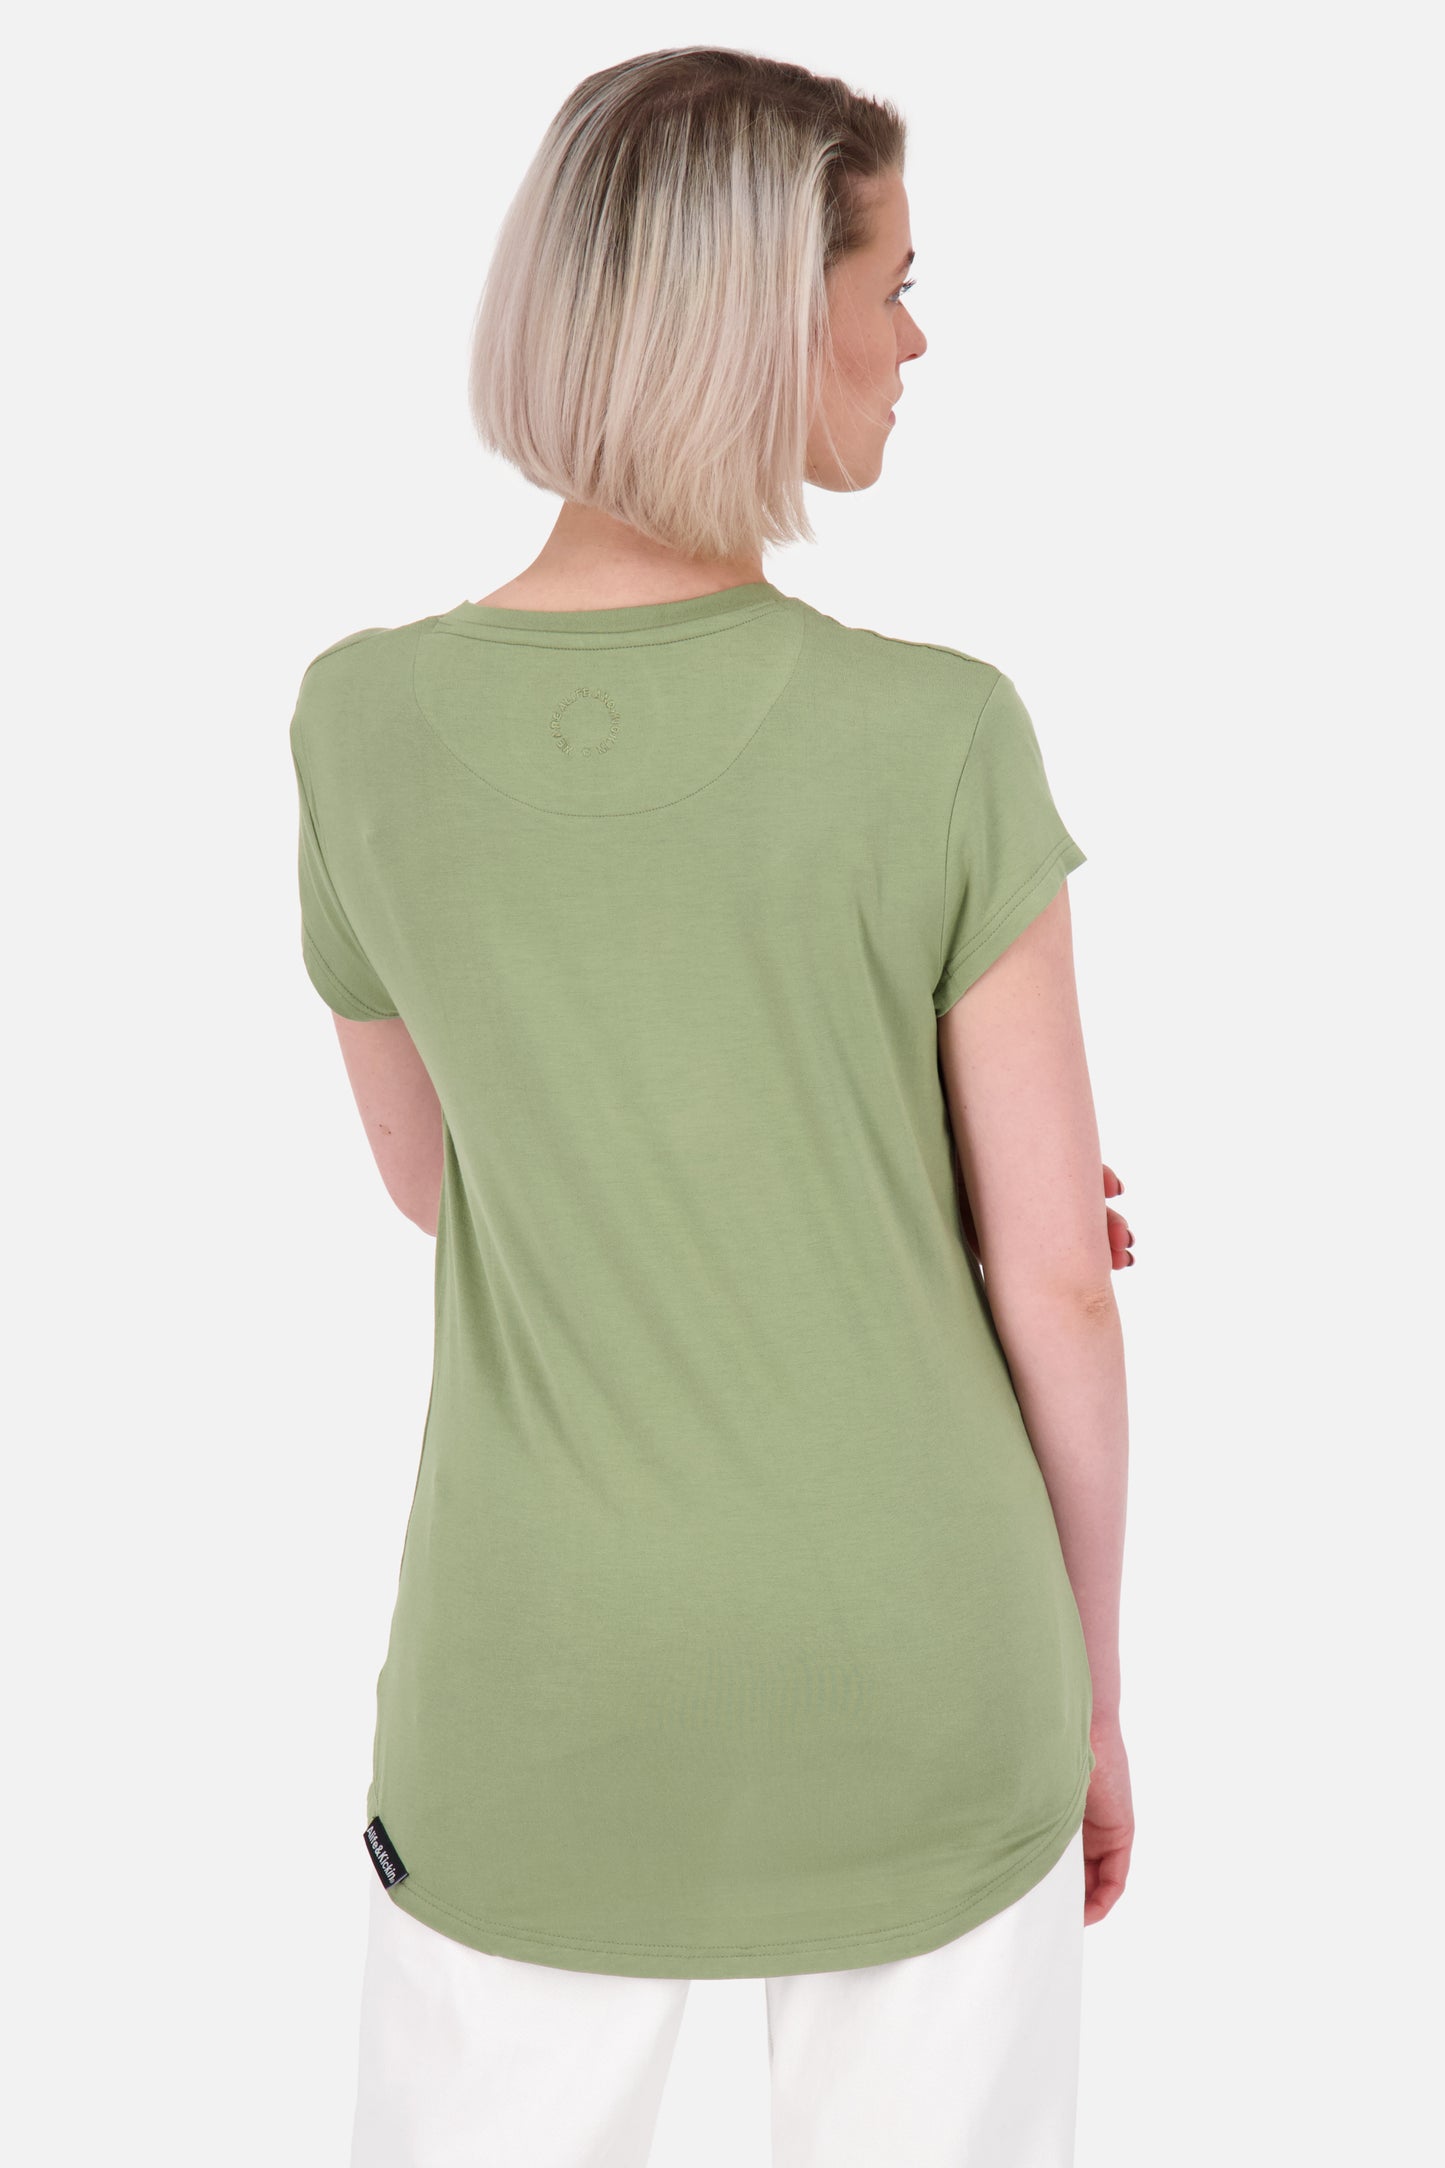 T-Shirt MimmyAK A für Damen - Stilvoll kombinierbar und angenehm zu tragen Grün